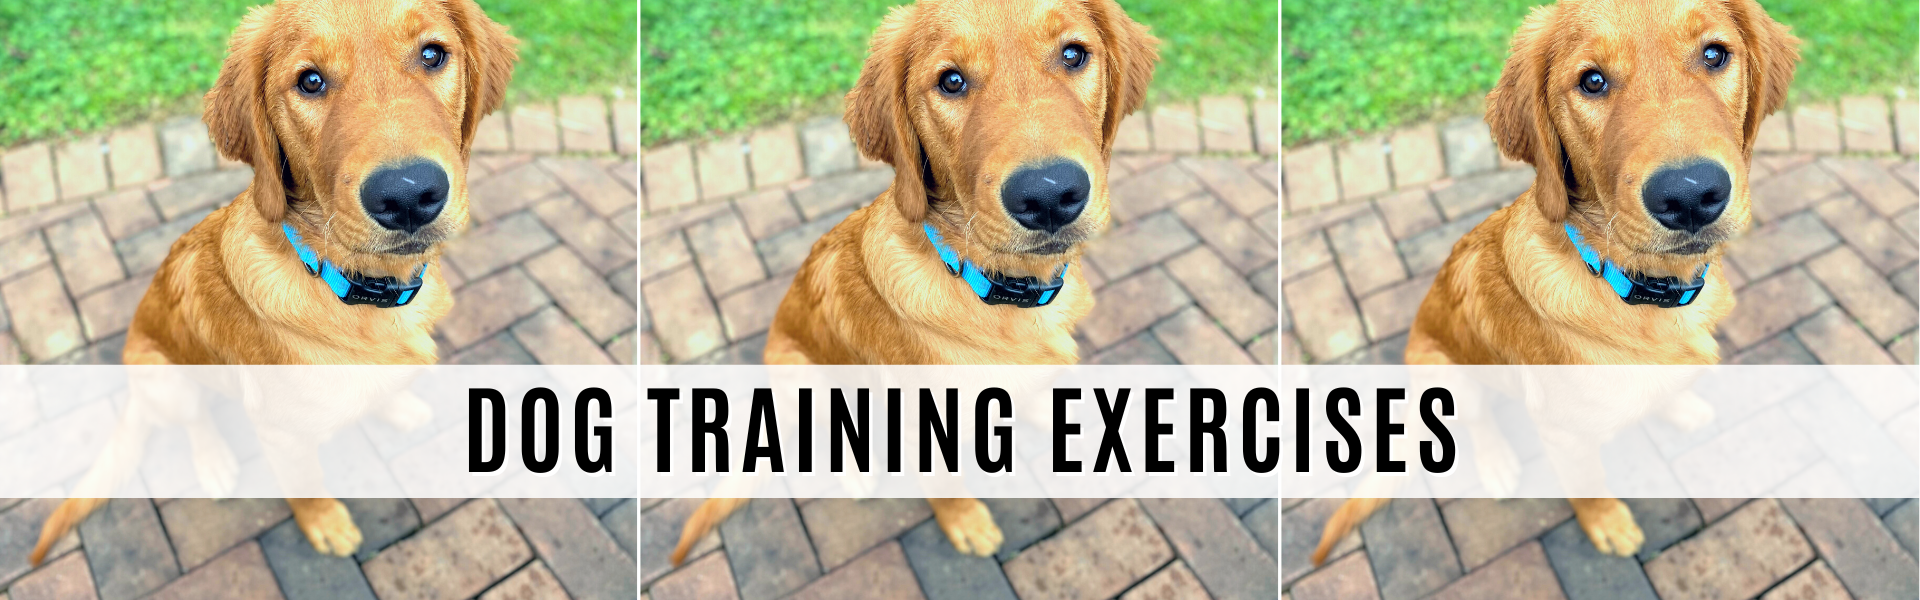 dog training exercises